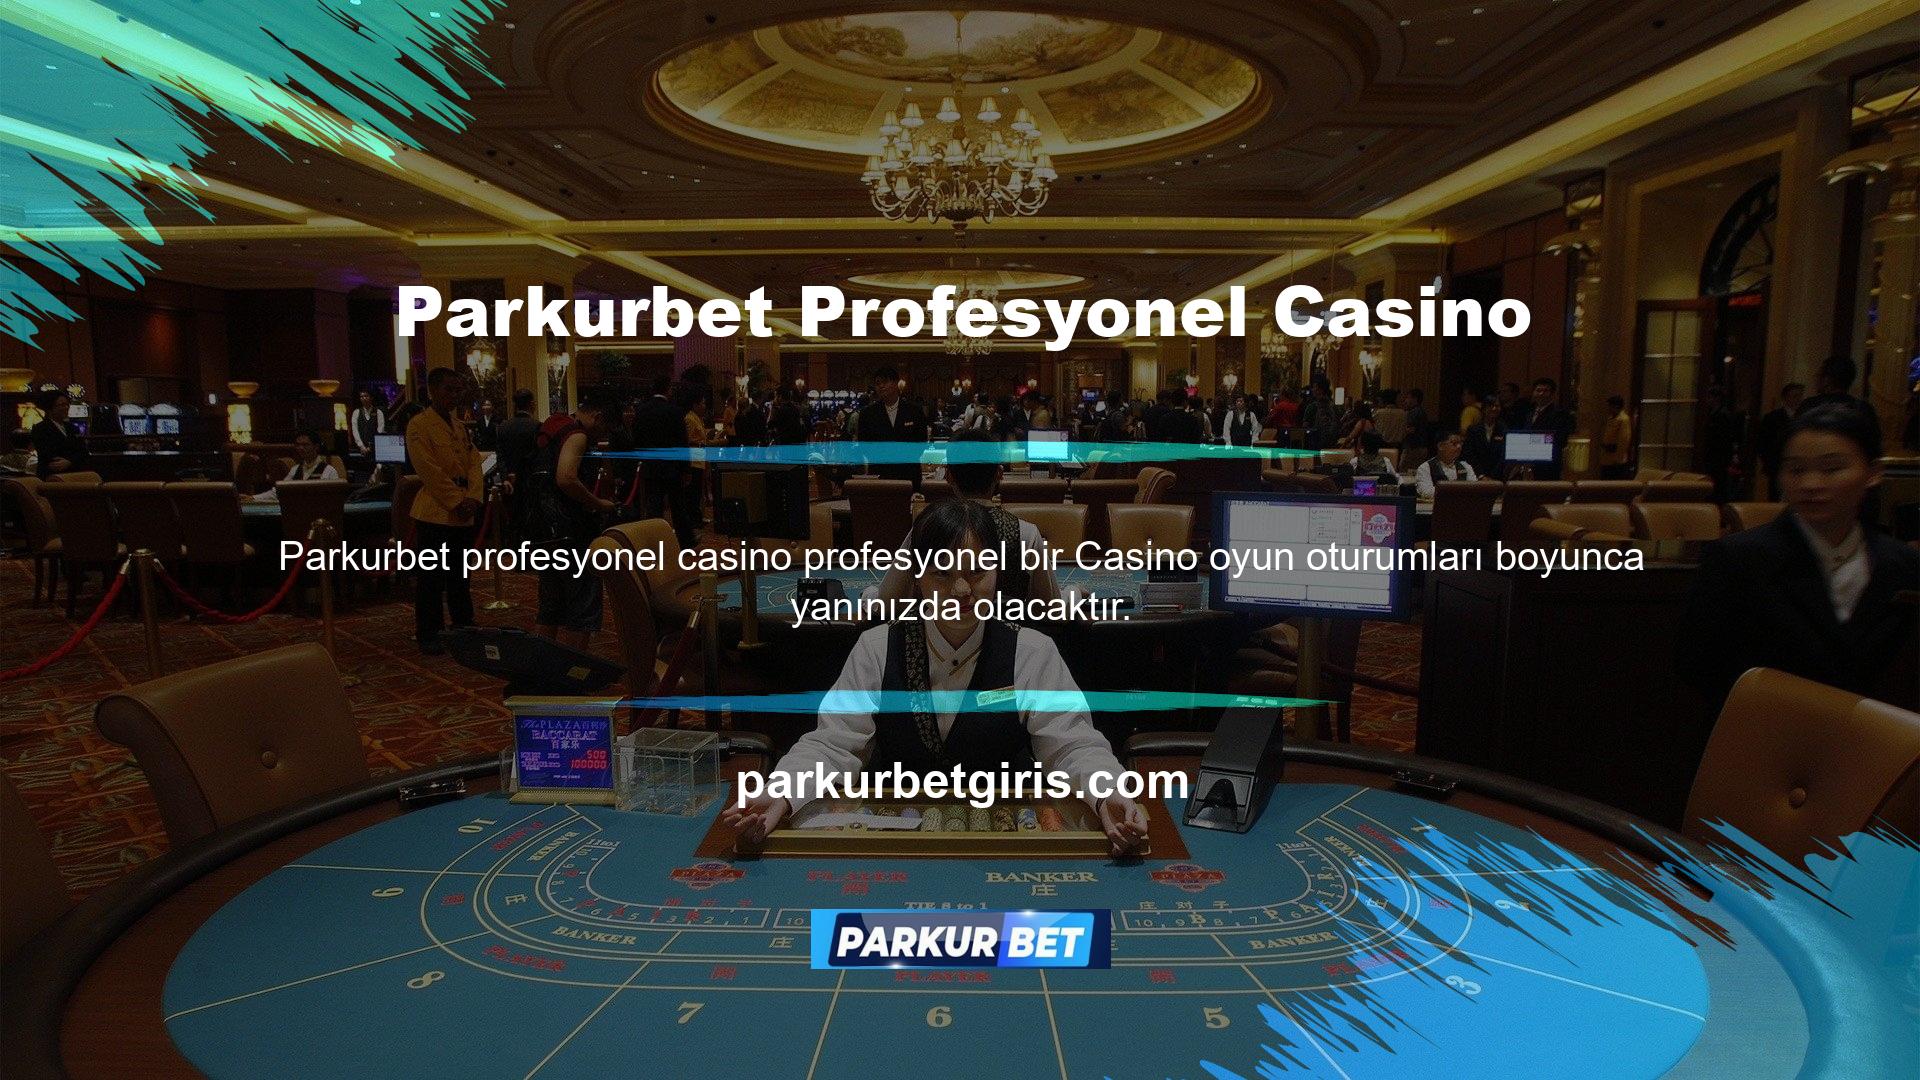 Parkurbet rulet, blackjack, bakara ve poker gibi çeşitli canlı casino oyunları sunmaktadır